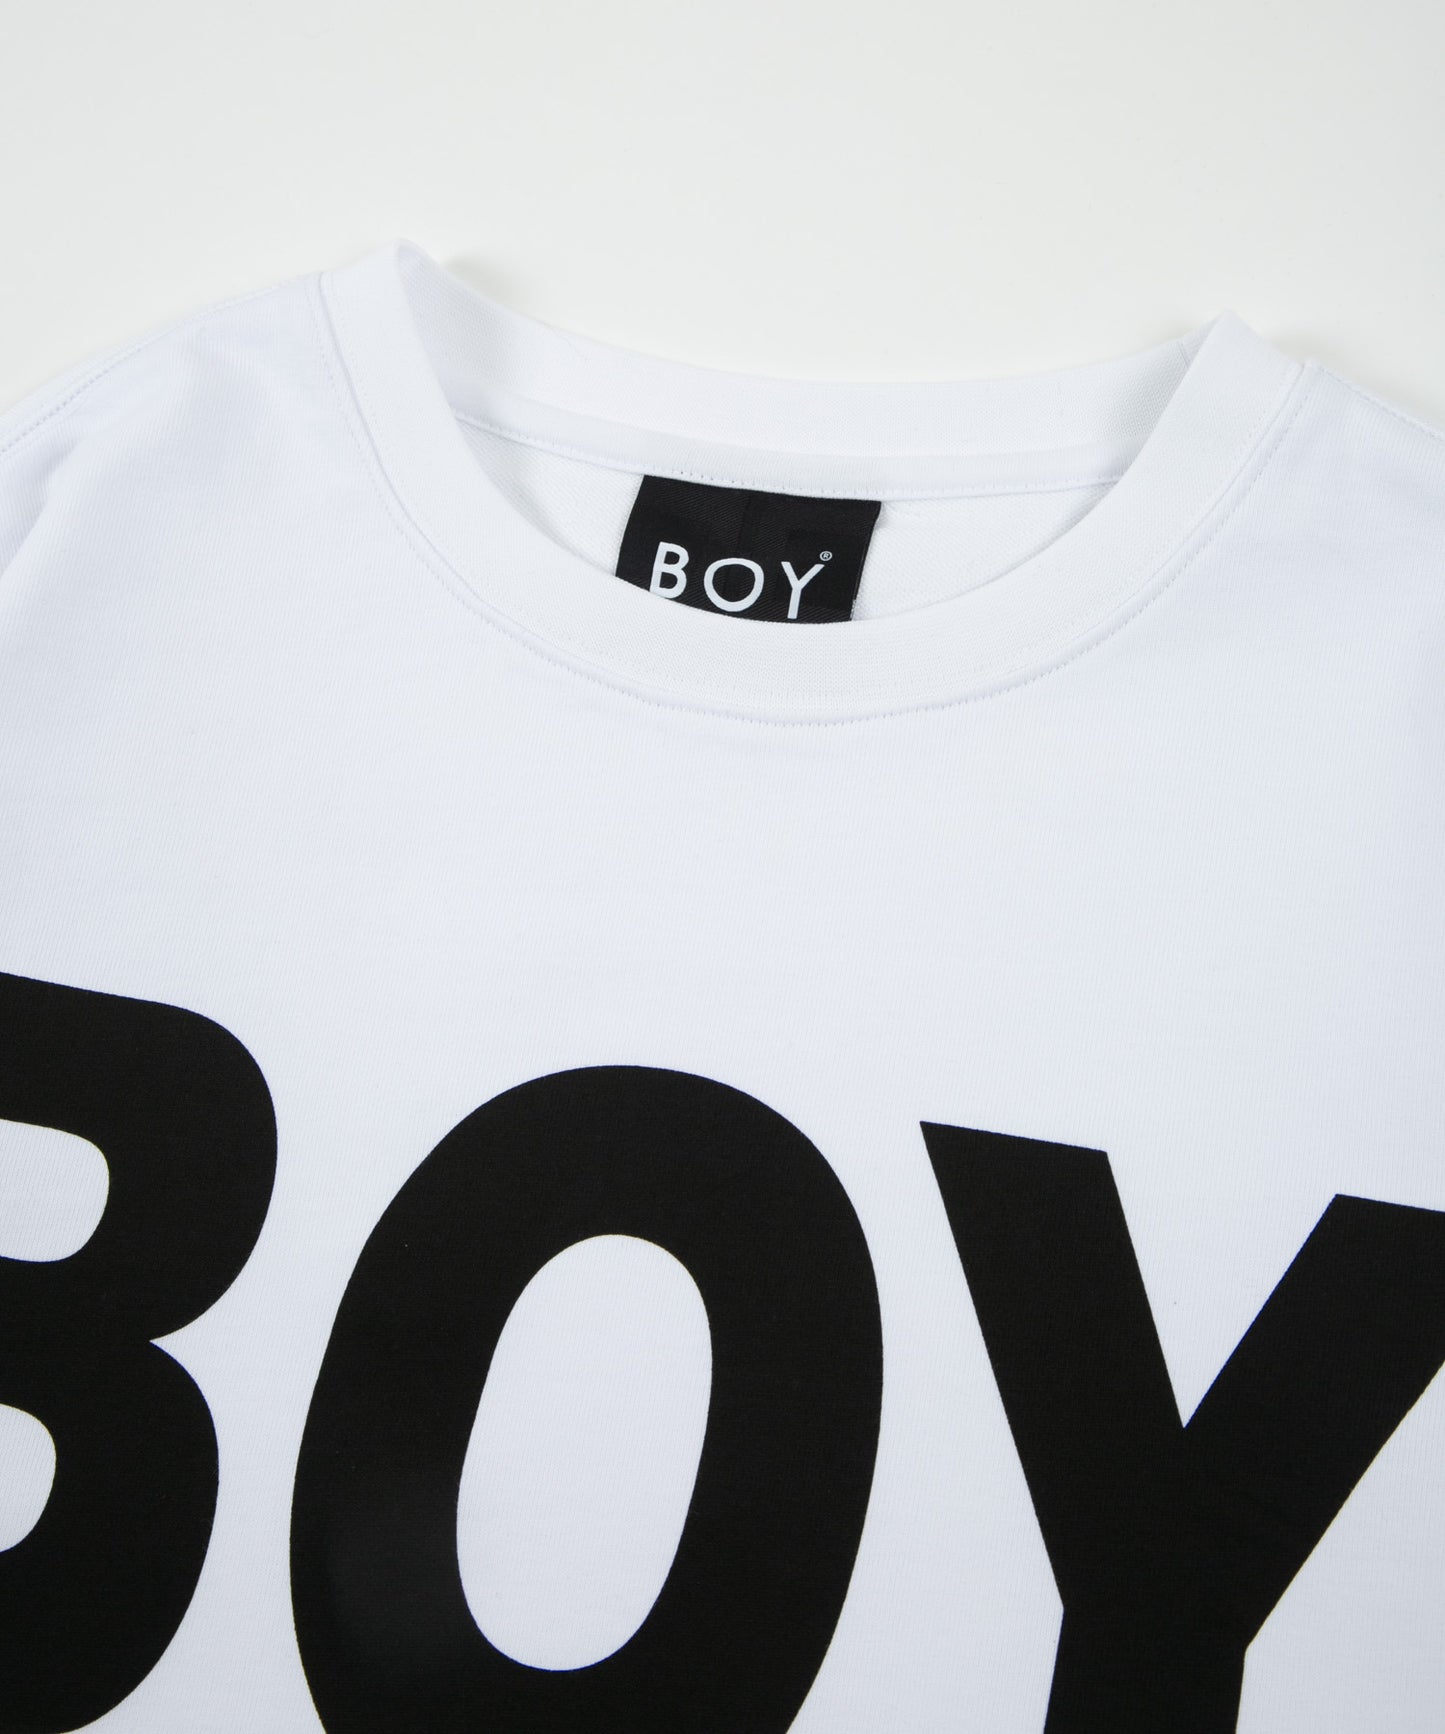 BOY LONDON LOGO SWEAT WHITE×BLACK【AFJ-2102-SWW01】